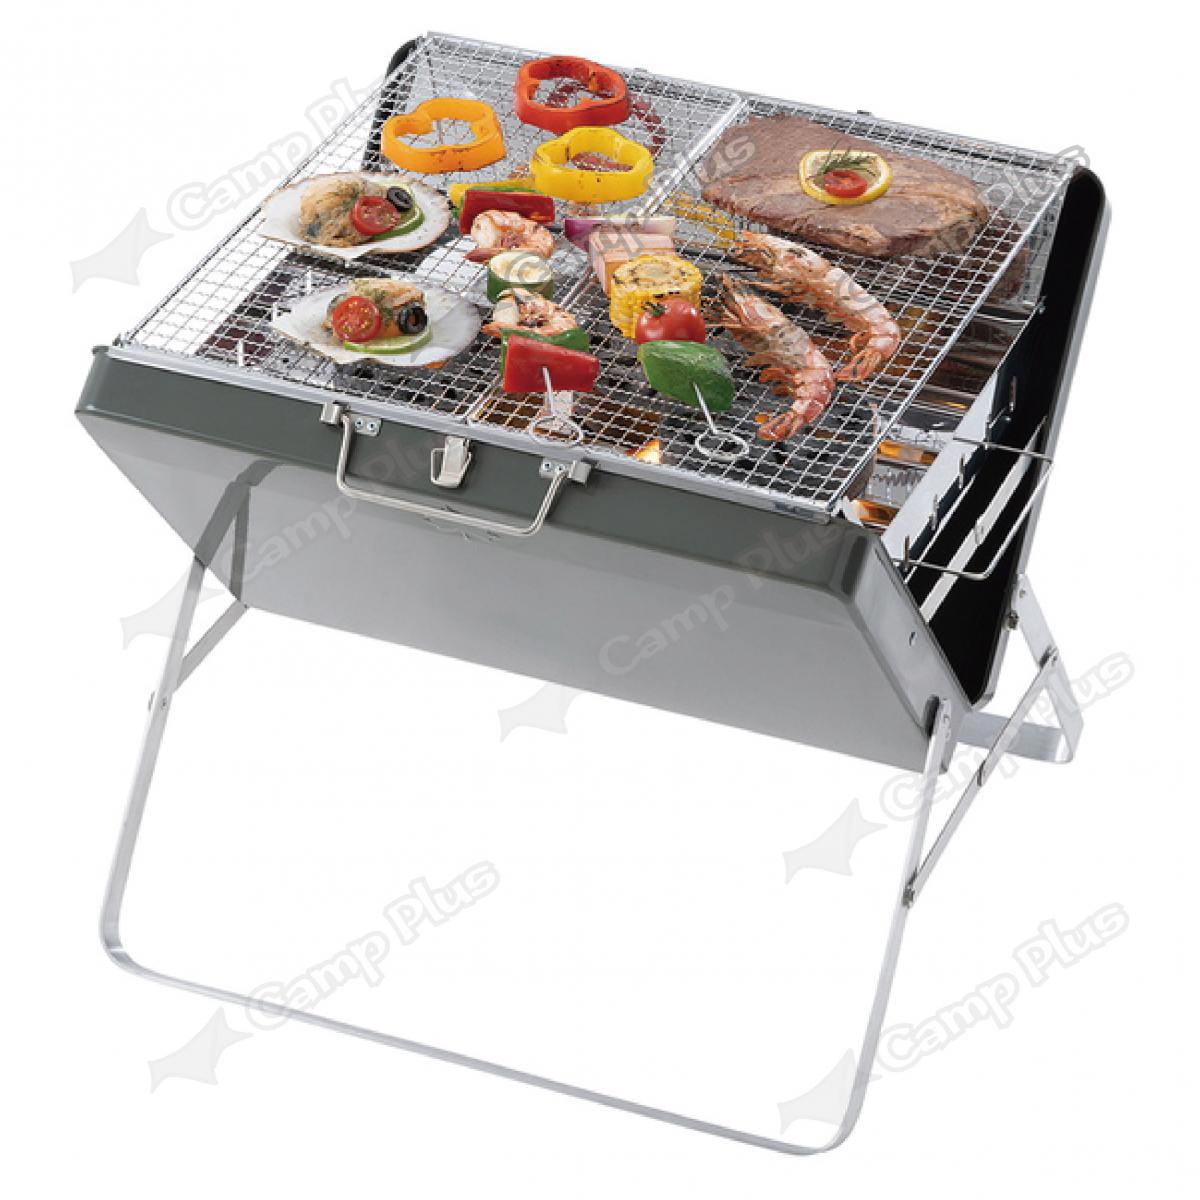 【日本LOGOS】手提箱型烤肉爐 XL_LG81060950 (悠遊戶外) 7